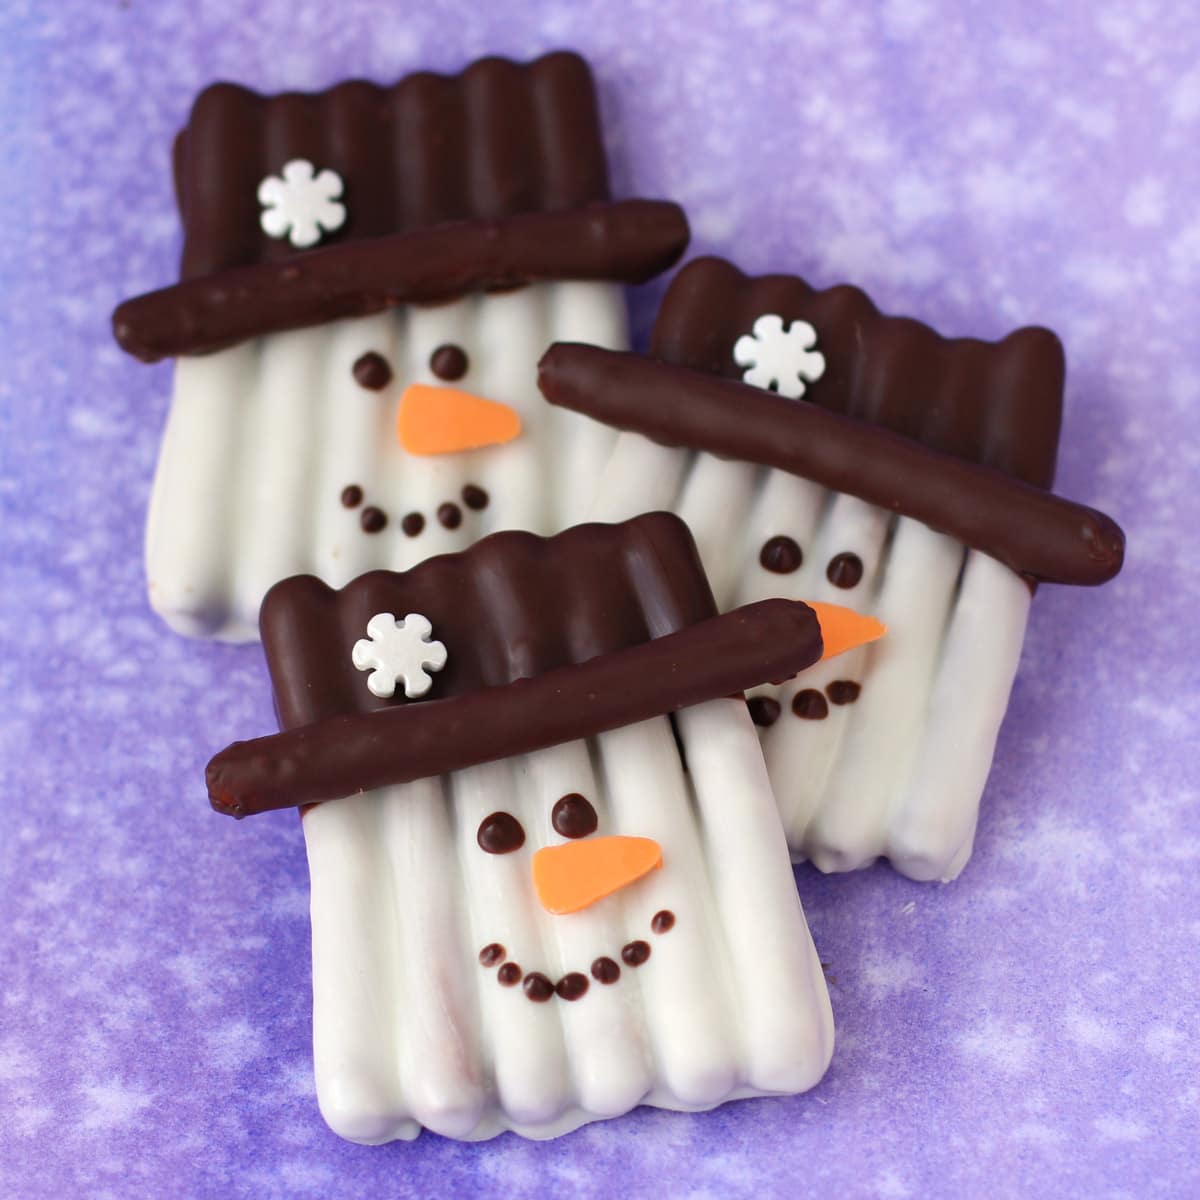 snowman pretzels made with pretzel sticks and candy melts.